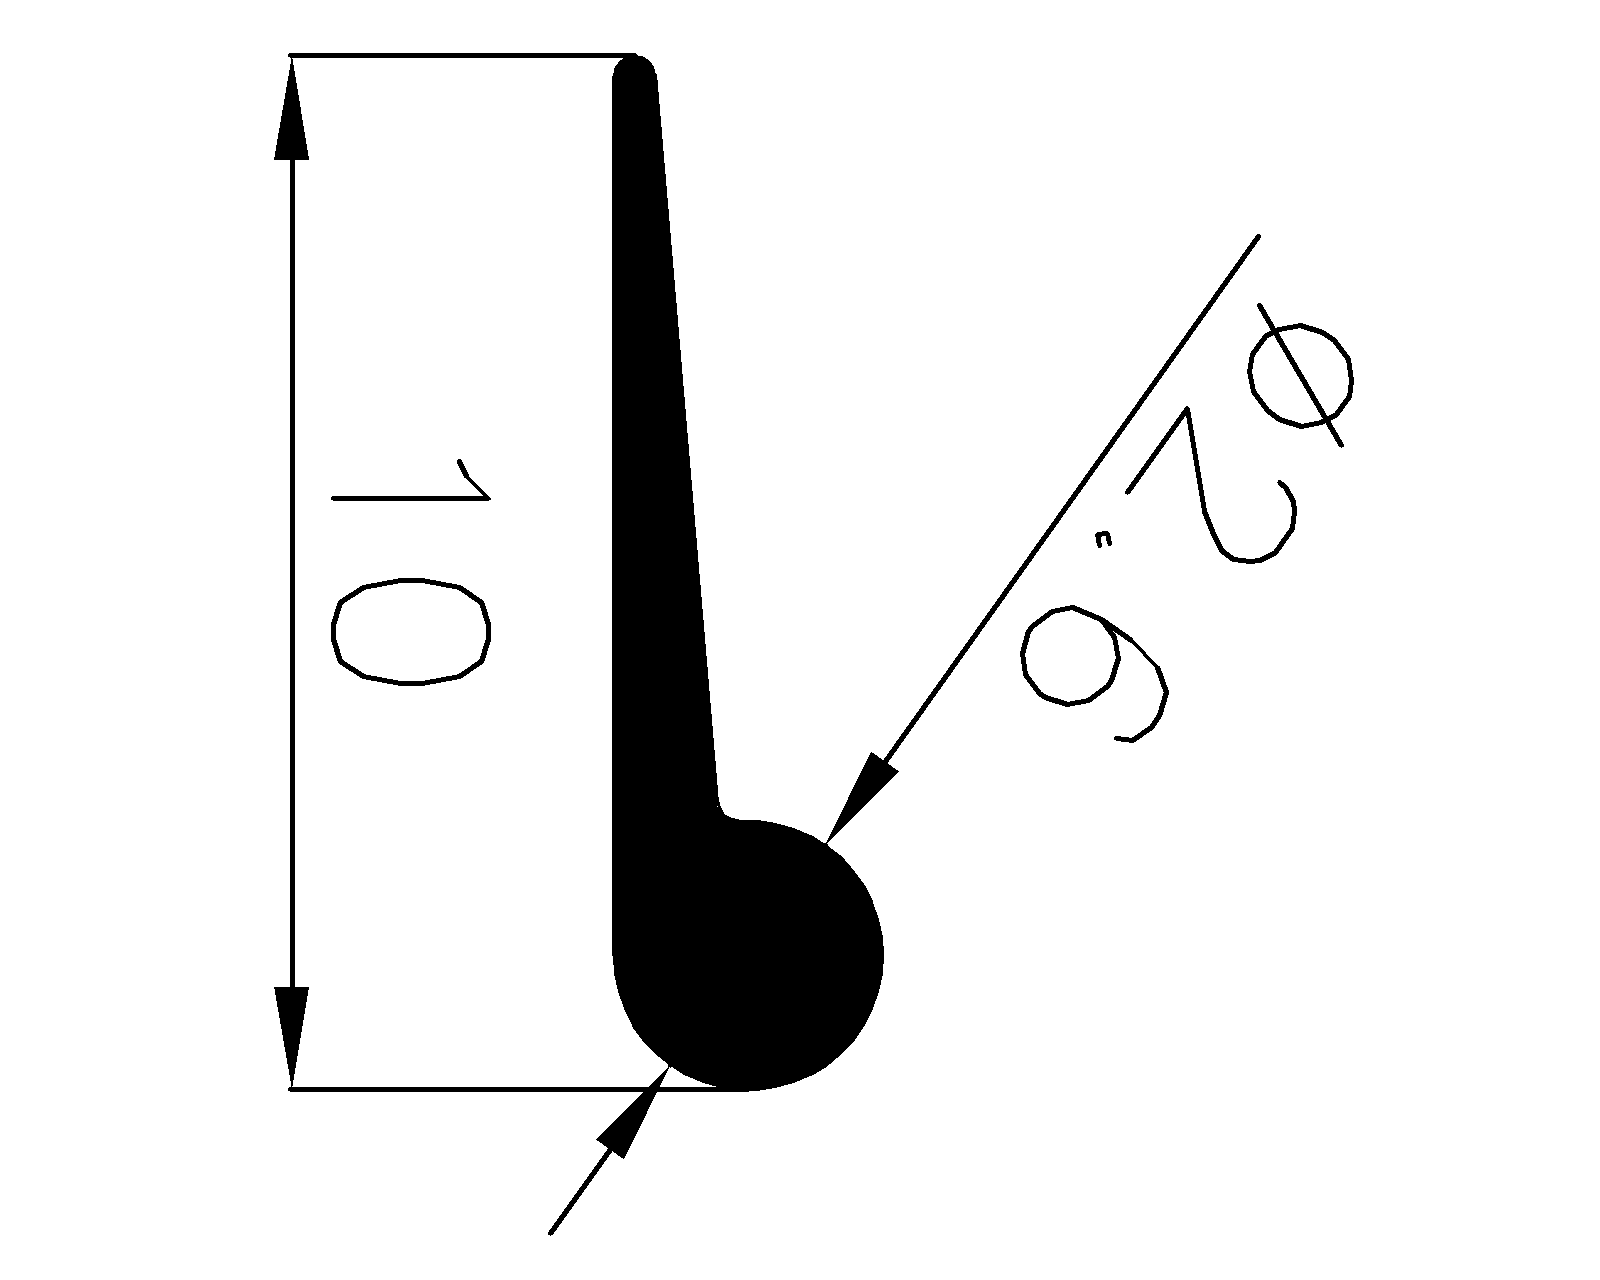 10030160KG - szilikon gumiprofilok - Lobogó vagy 'P' alakú profilok